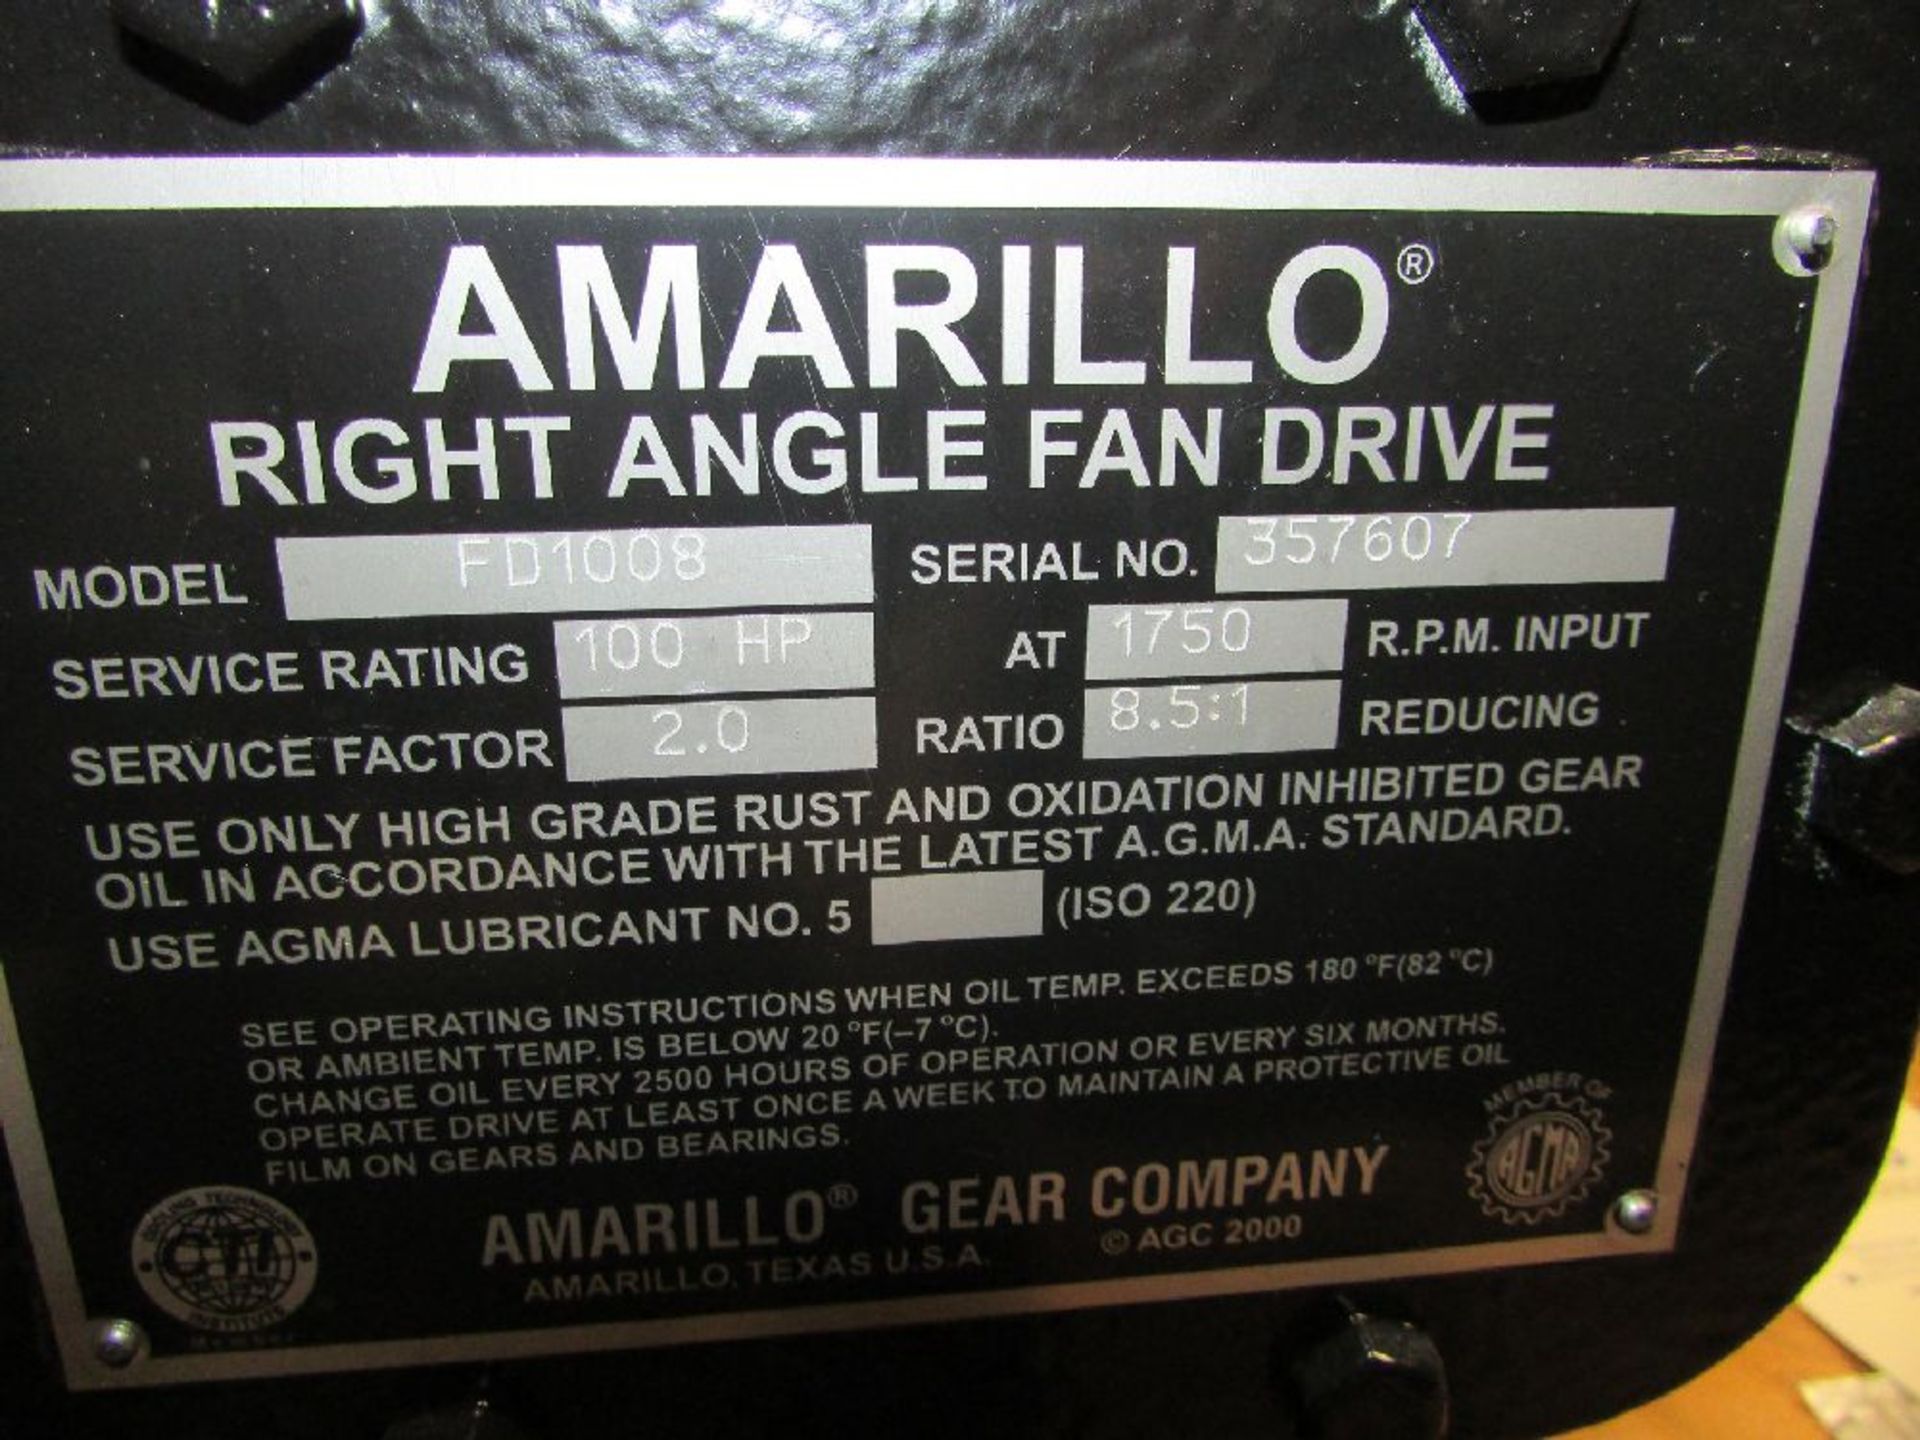 Amarillo Gear Co. Model FD1008 8.5 Ratio Right Angle Fan Drive Gear Box - Image 4 of 4